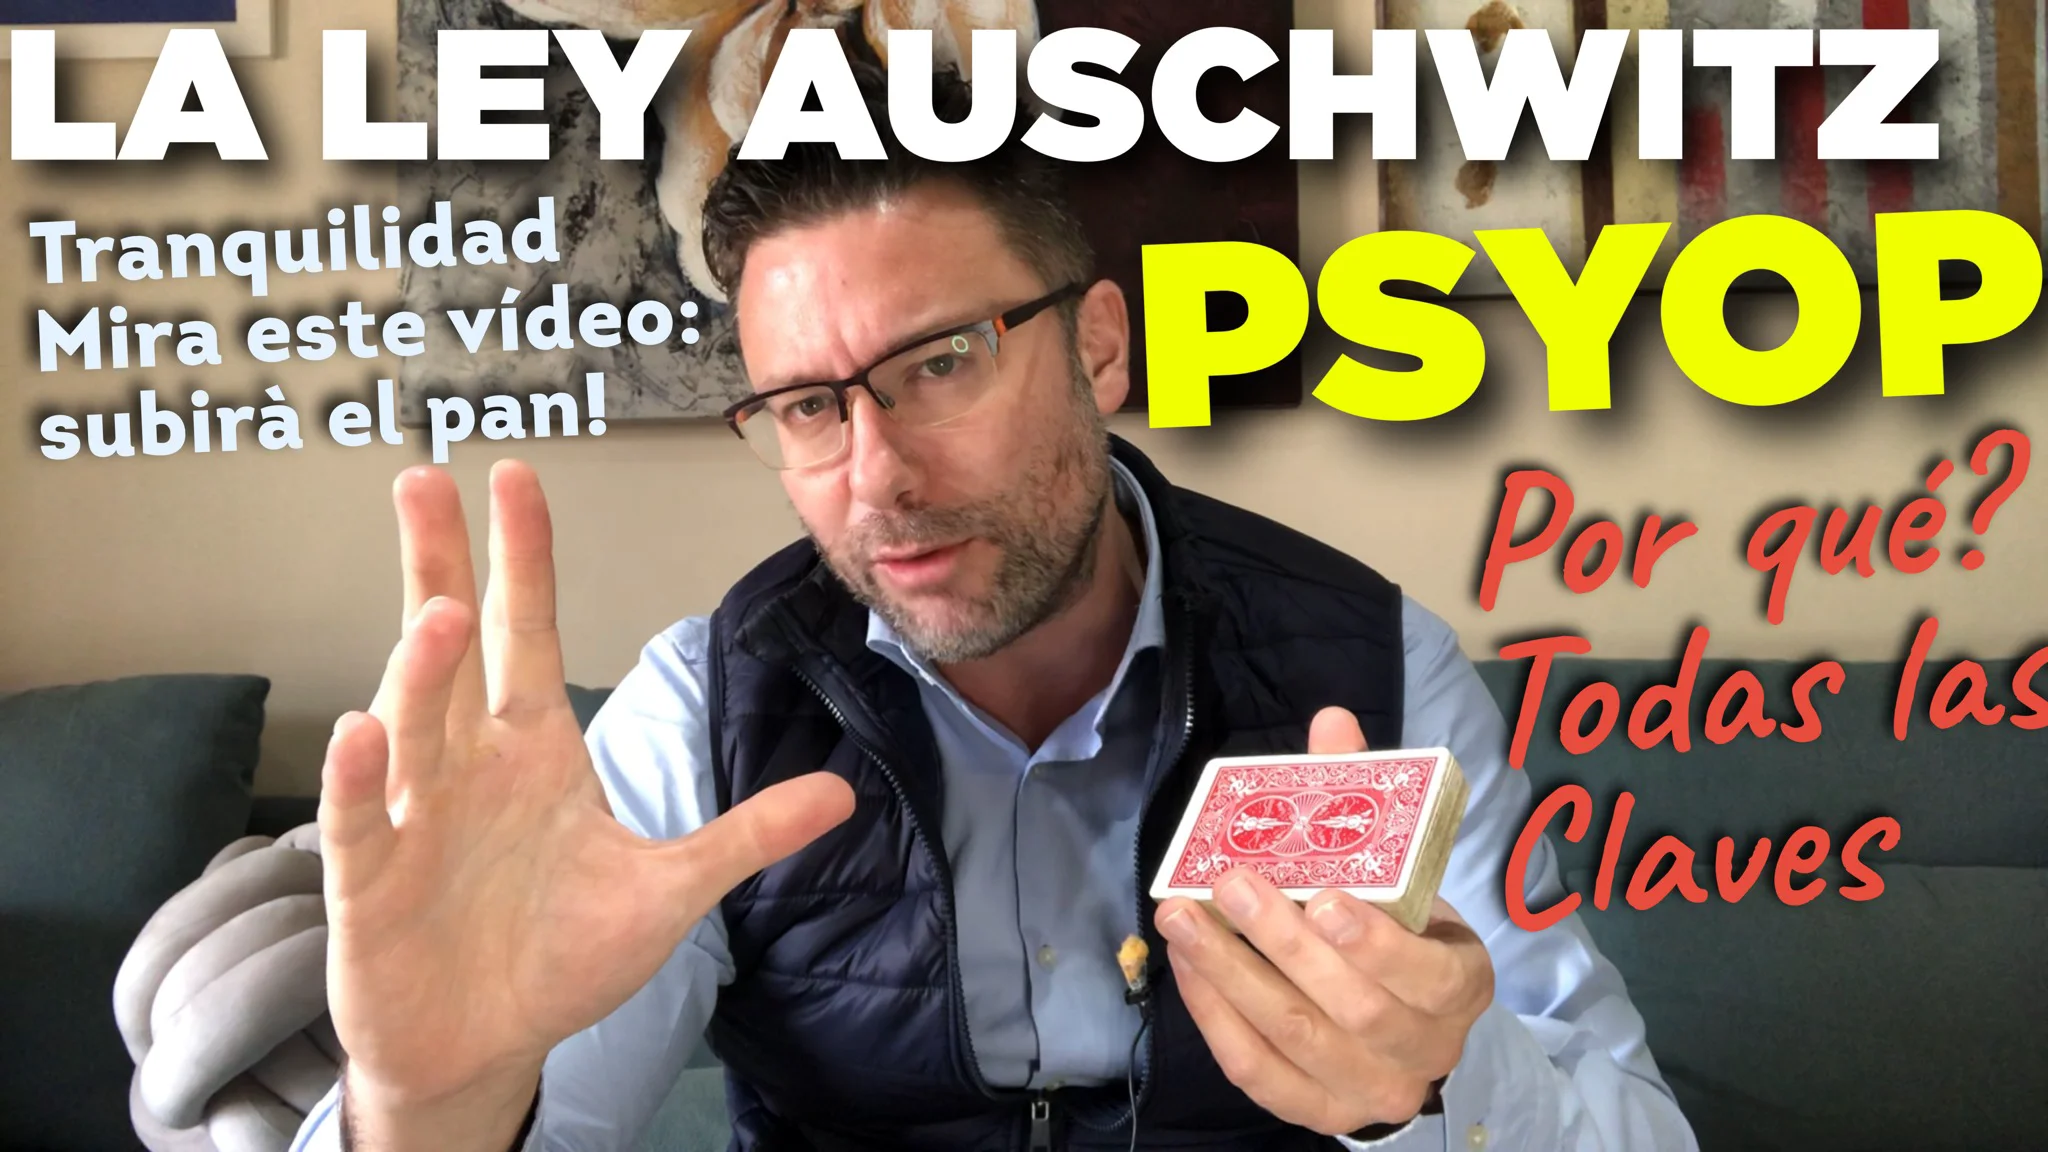 Ley Auschwitz y tests "traseros". Por qué es una Psyop? Todas las claves y verdades. Y las mejores estrategias ante la situación.